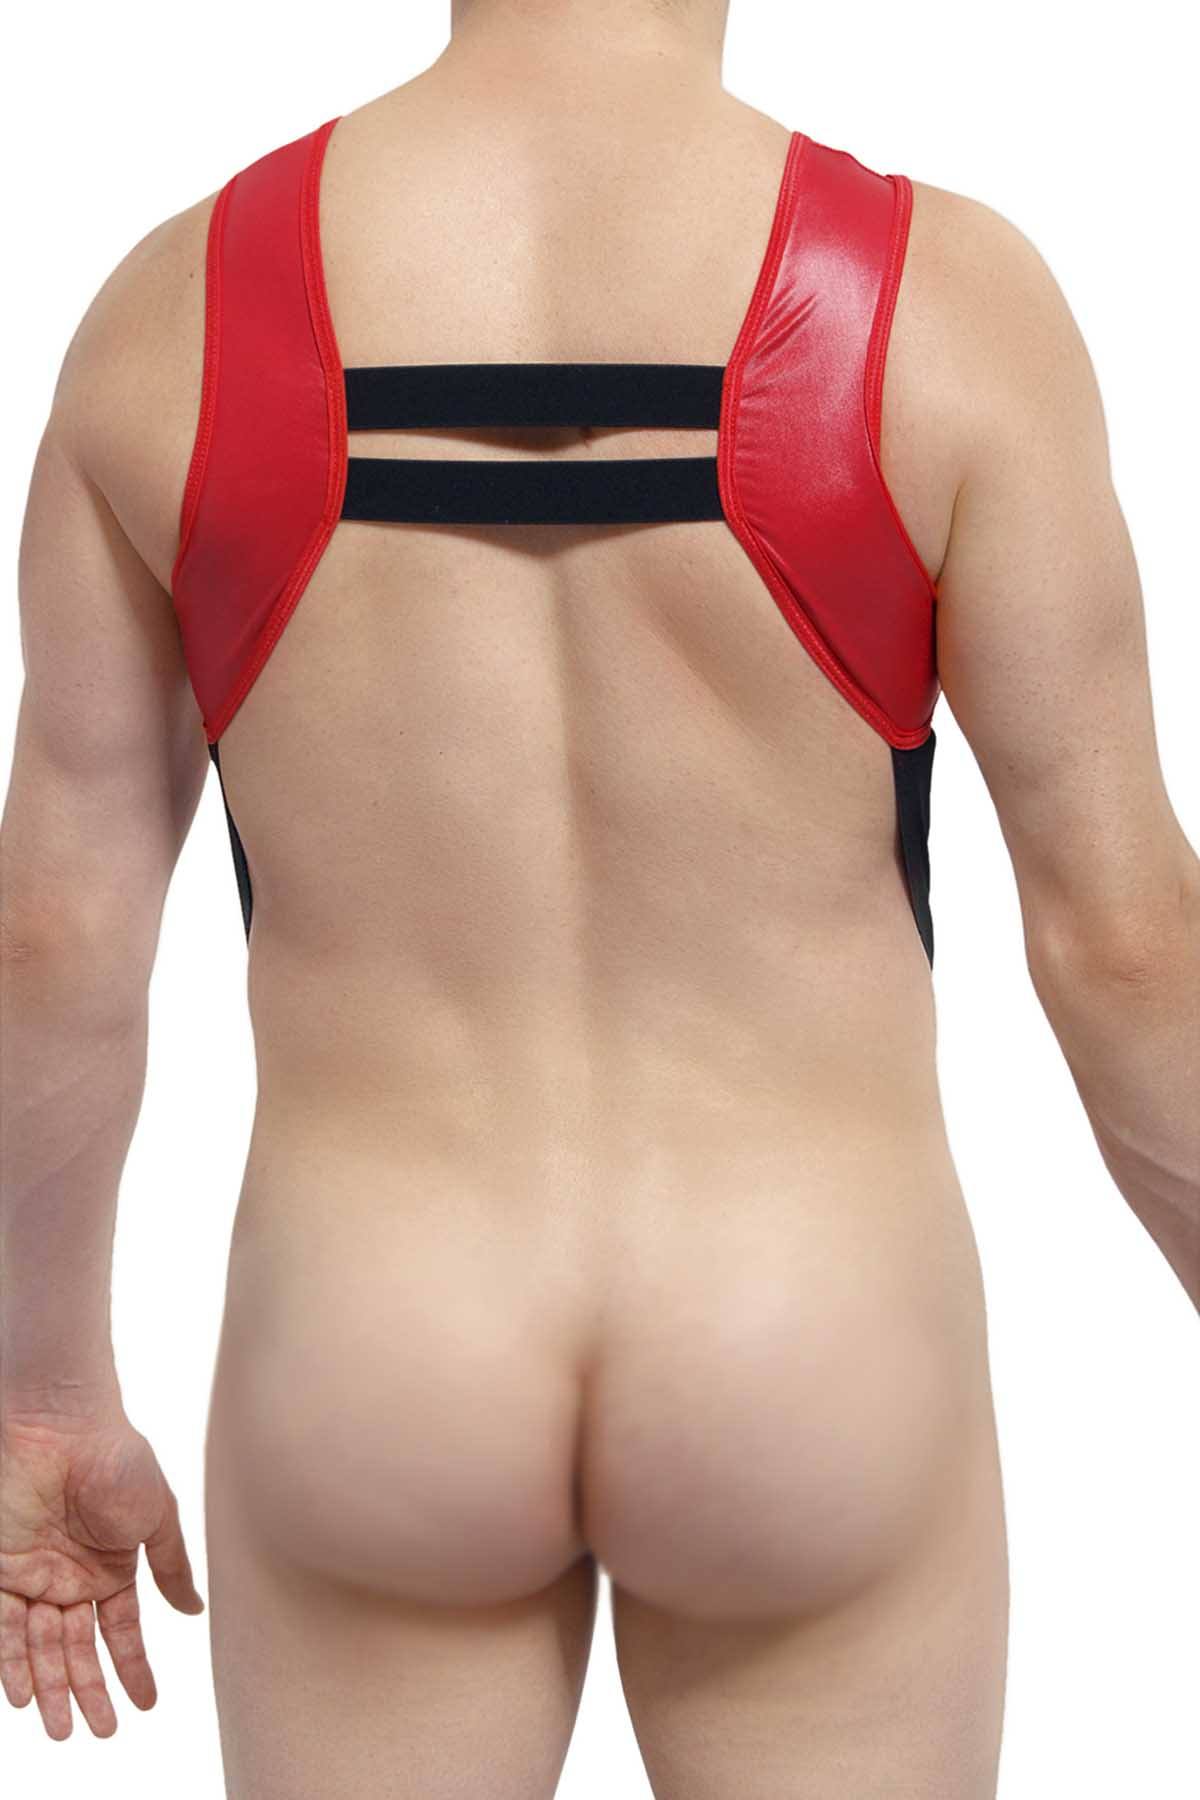 PetitQ Red/Black Lamat Harness